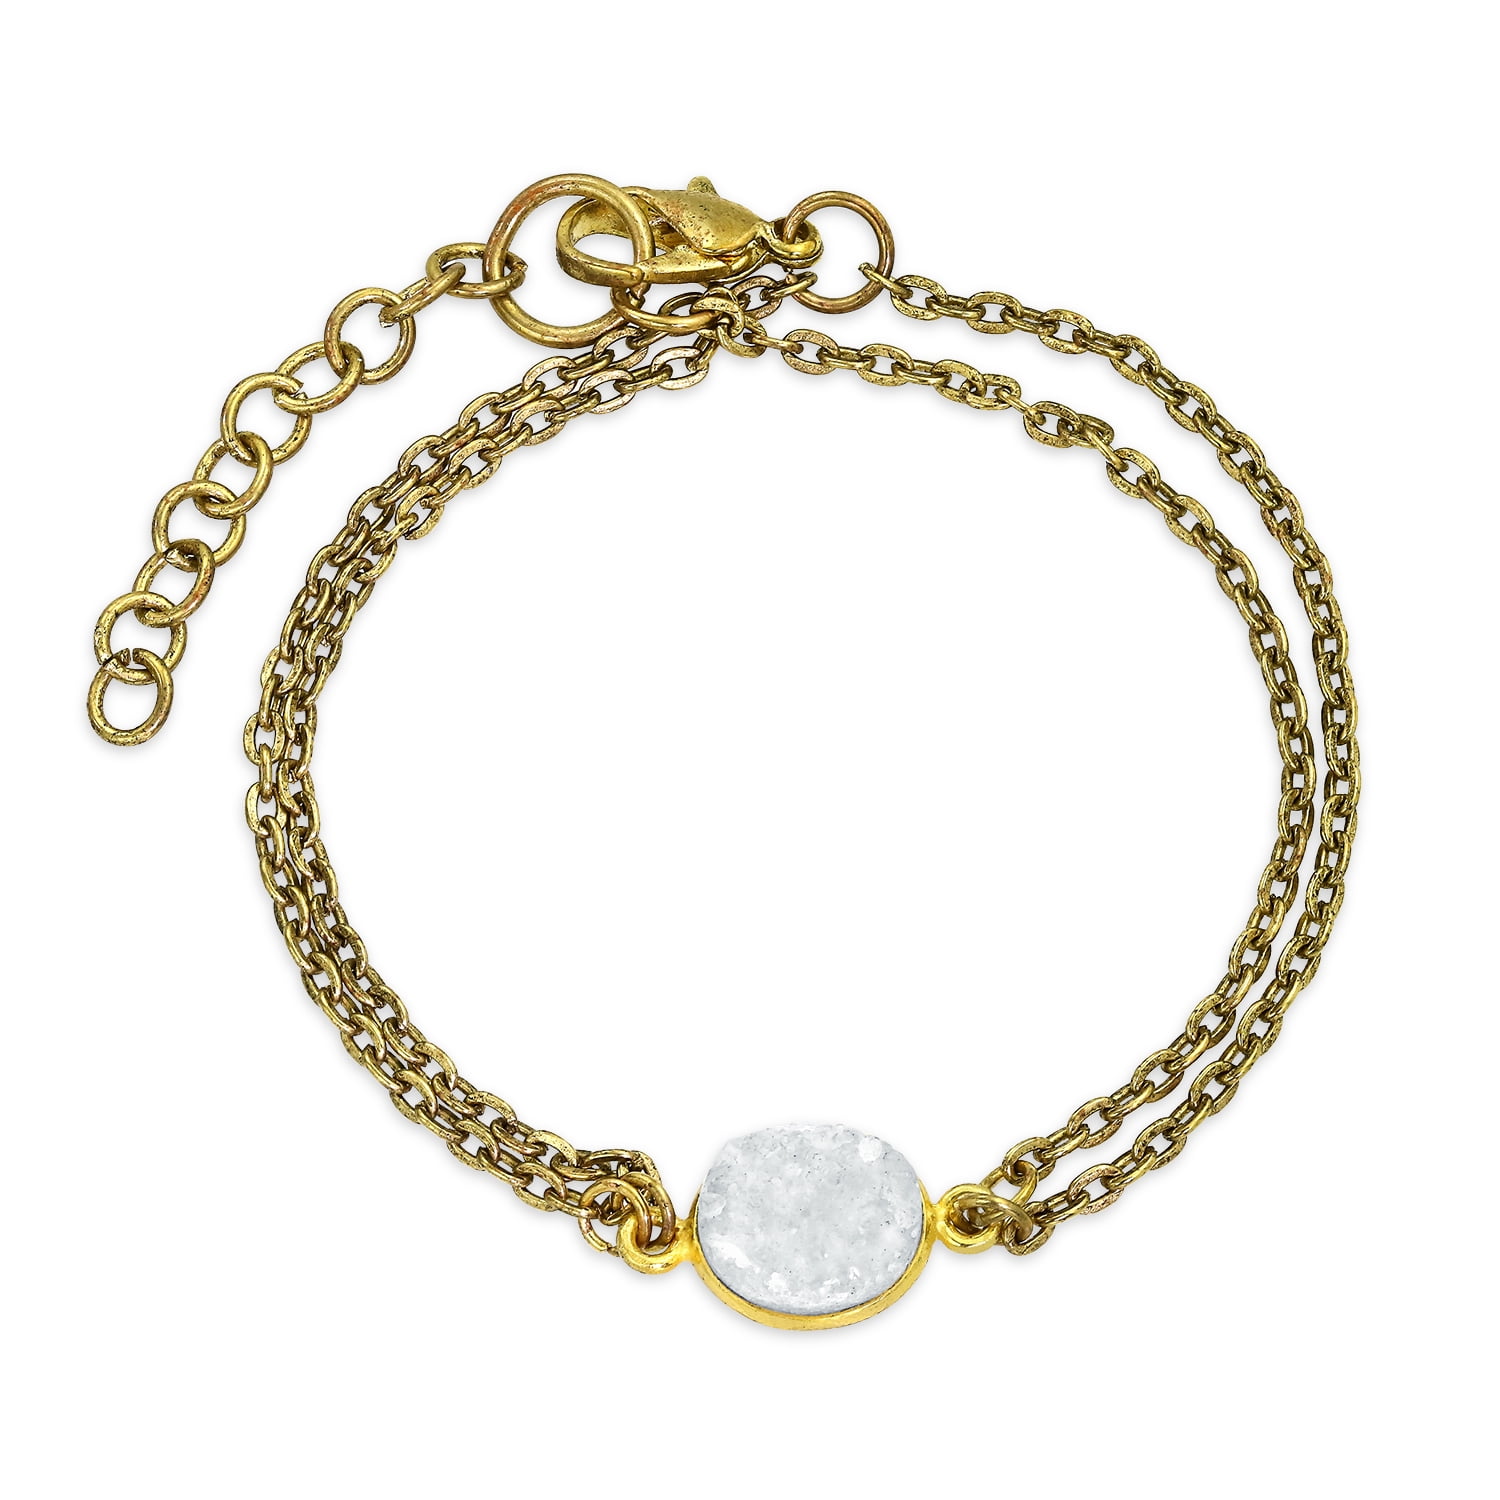 Gifts Under 40 Gold Filled Adjustable Bracelet Druzy Stone Bracelet Tennis Bracelet Diamond Druzy Stone